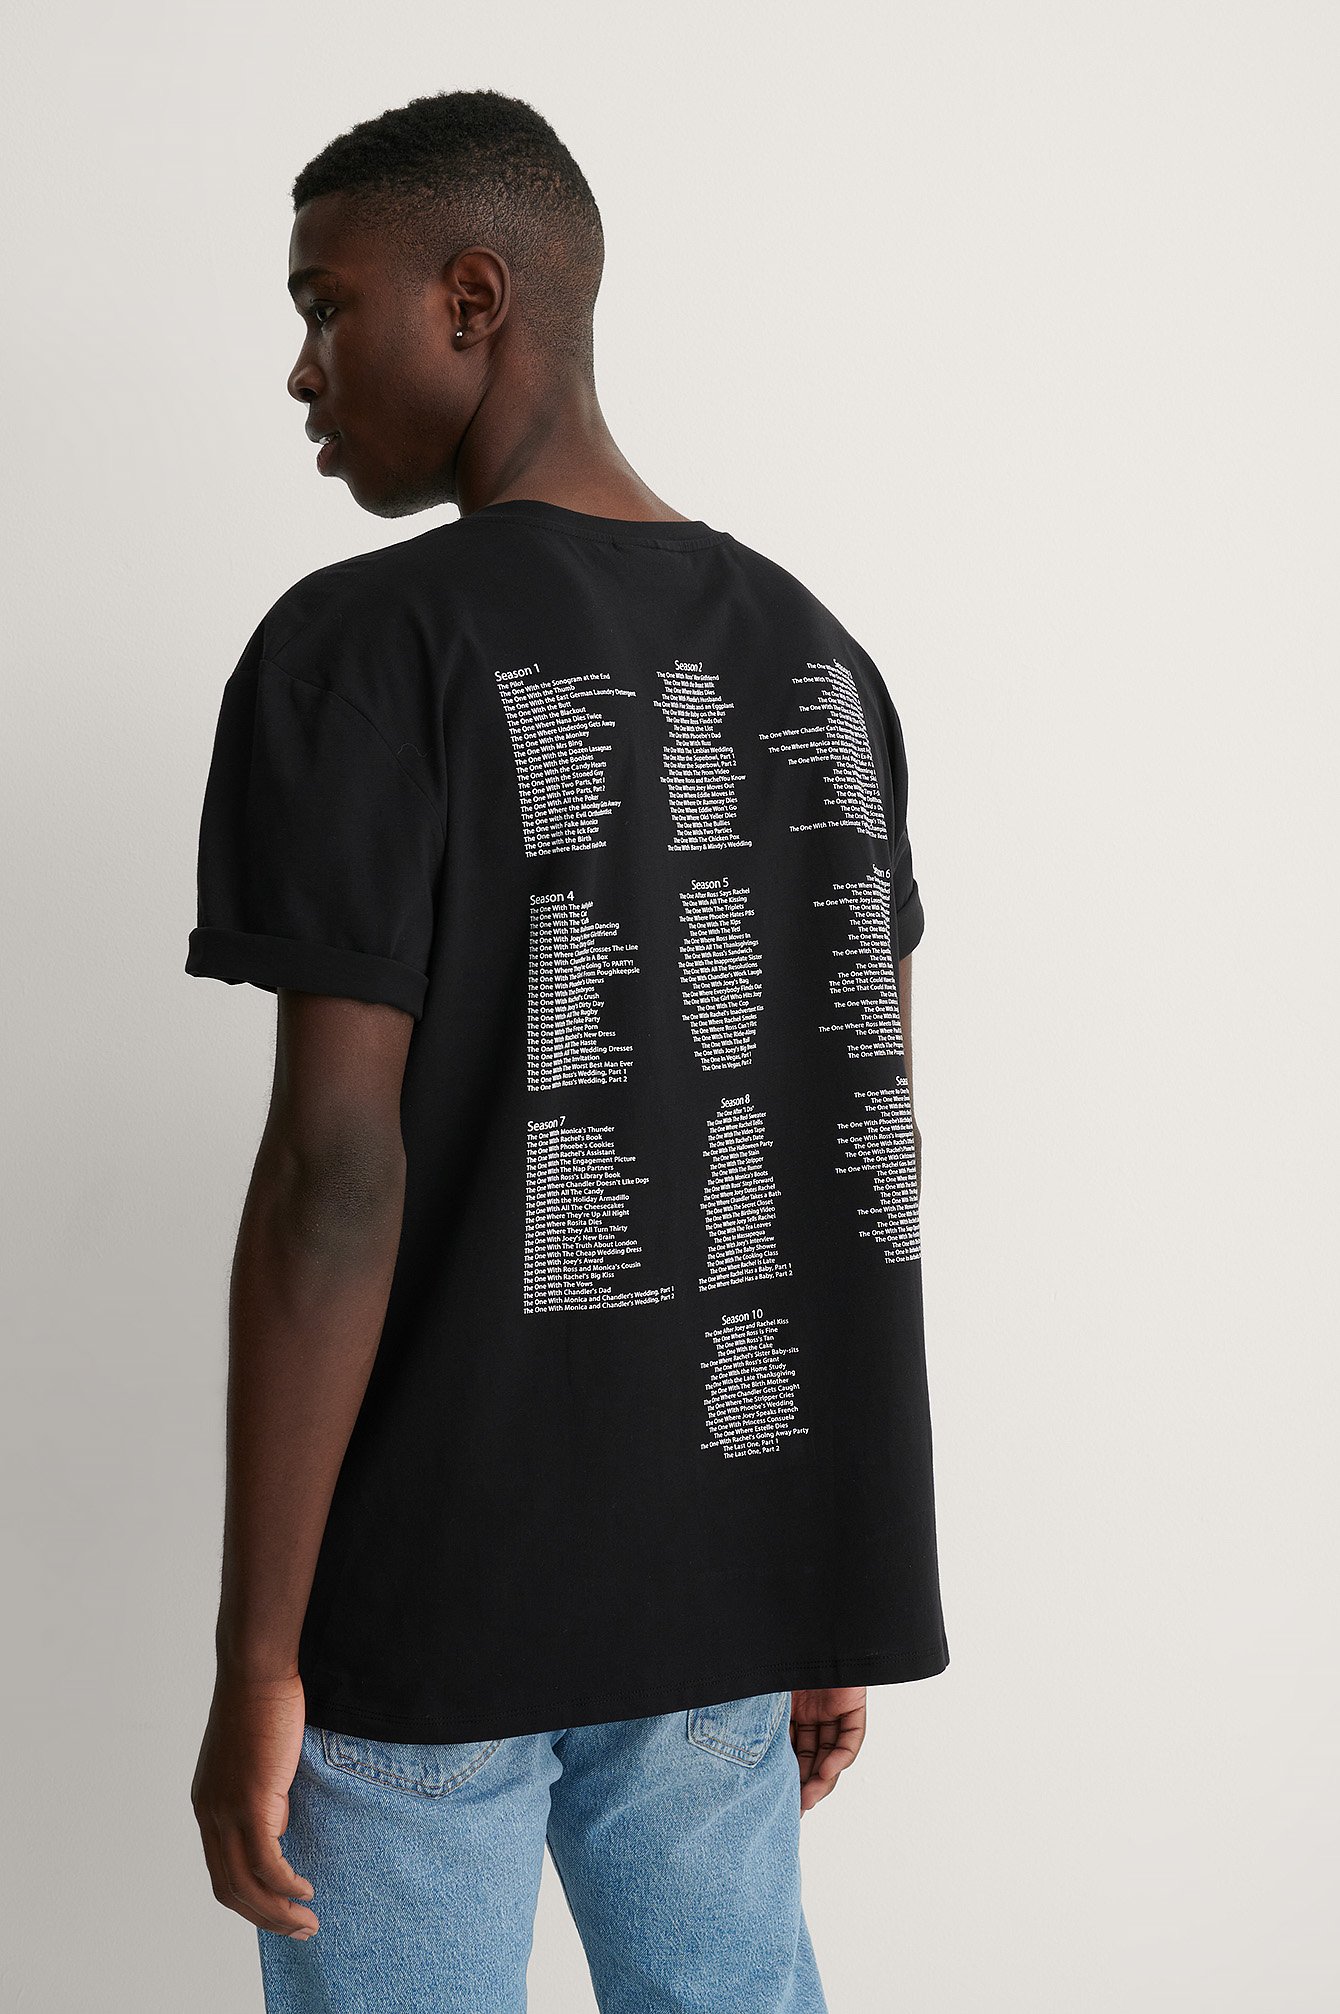 Black All Season Økologisk Unisex T-shirt Med Print Med FRIENDS